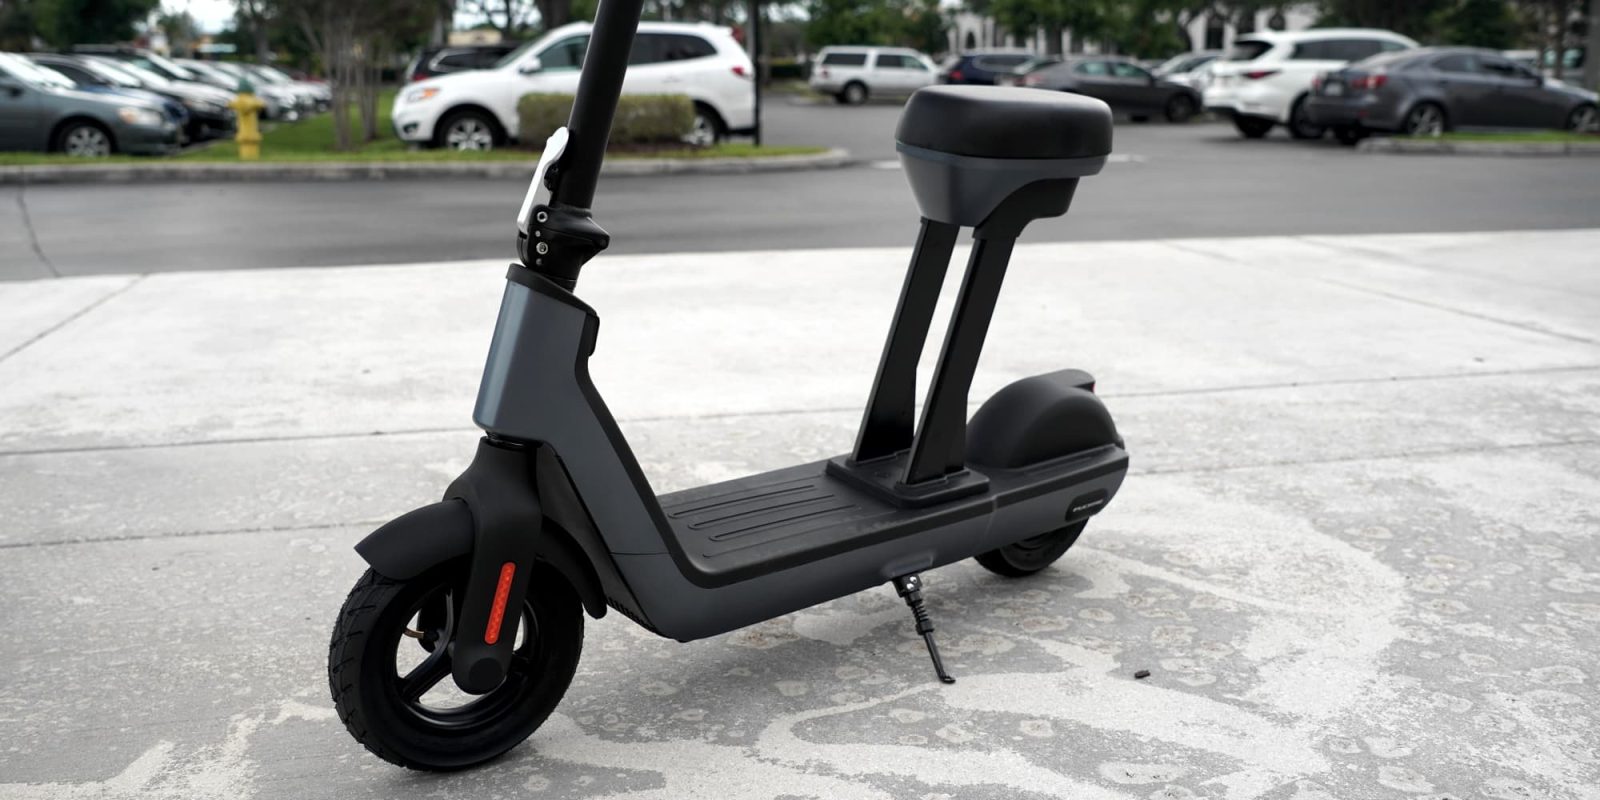 Fucare HU3 Pro electric scooter